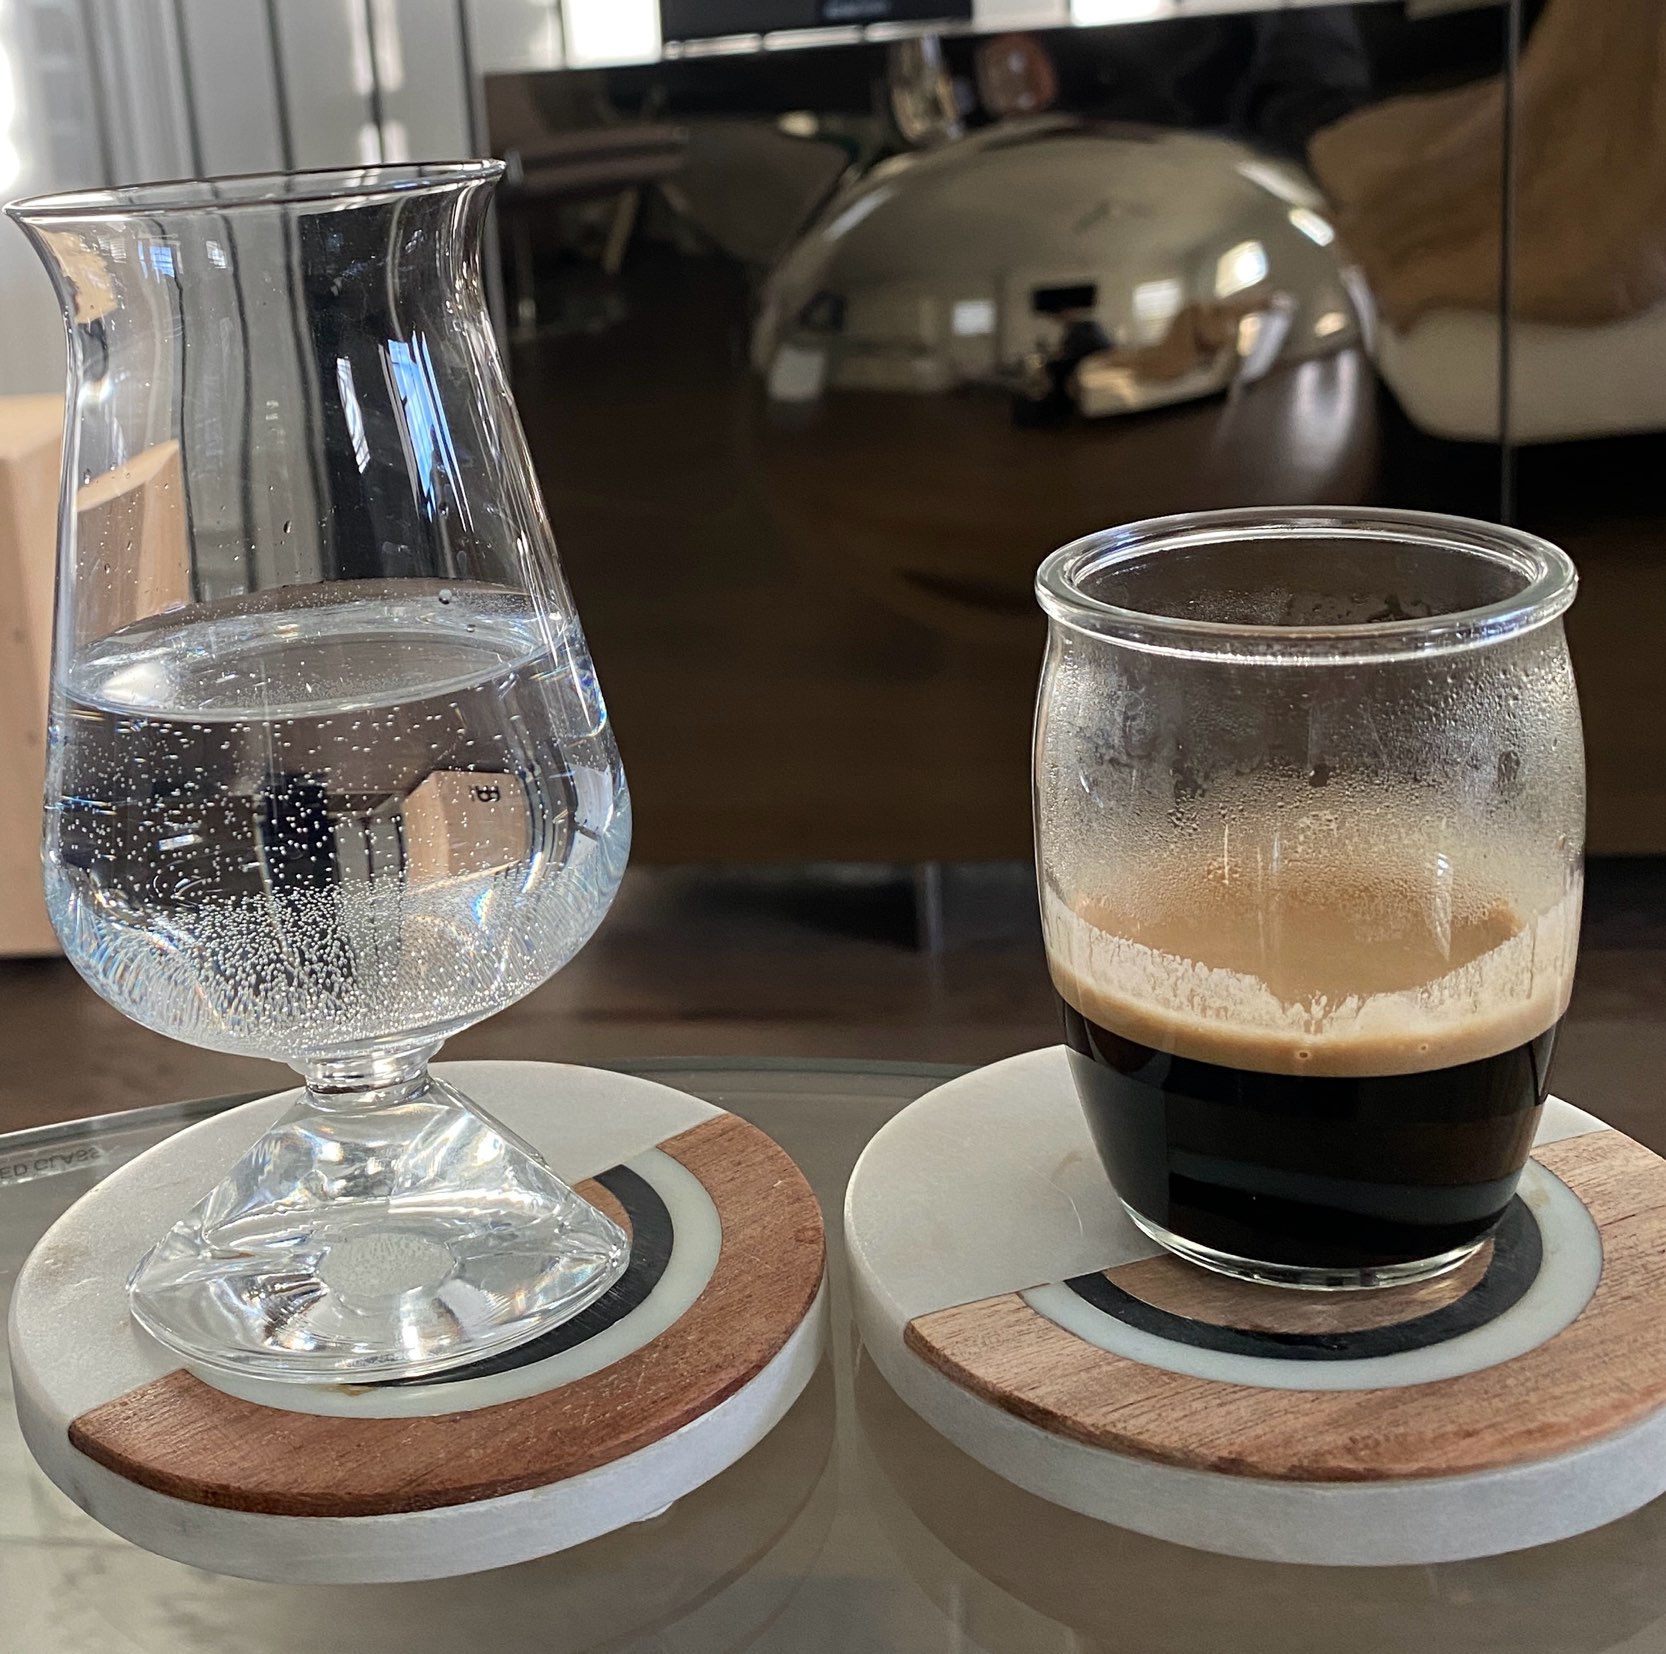 Reveal Espresso Glass